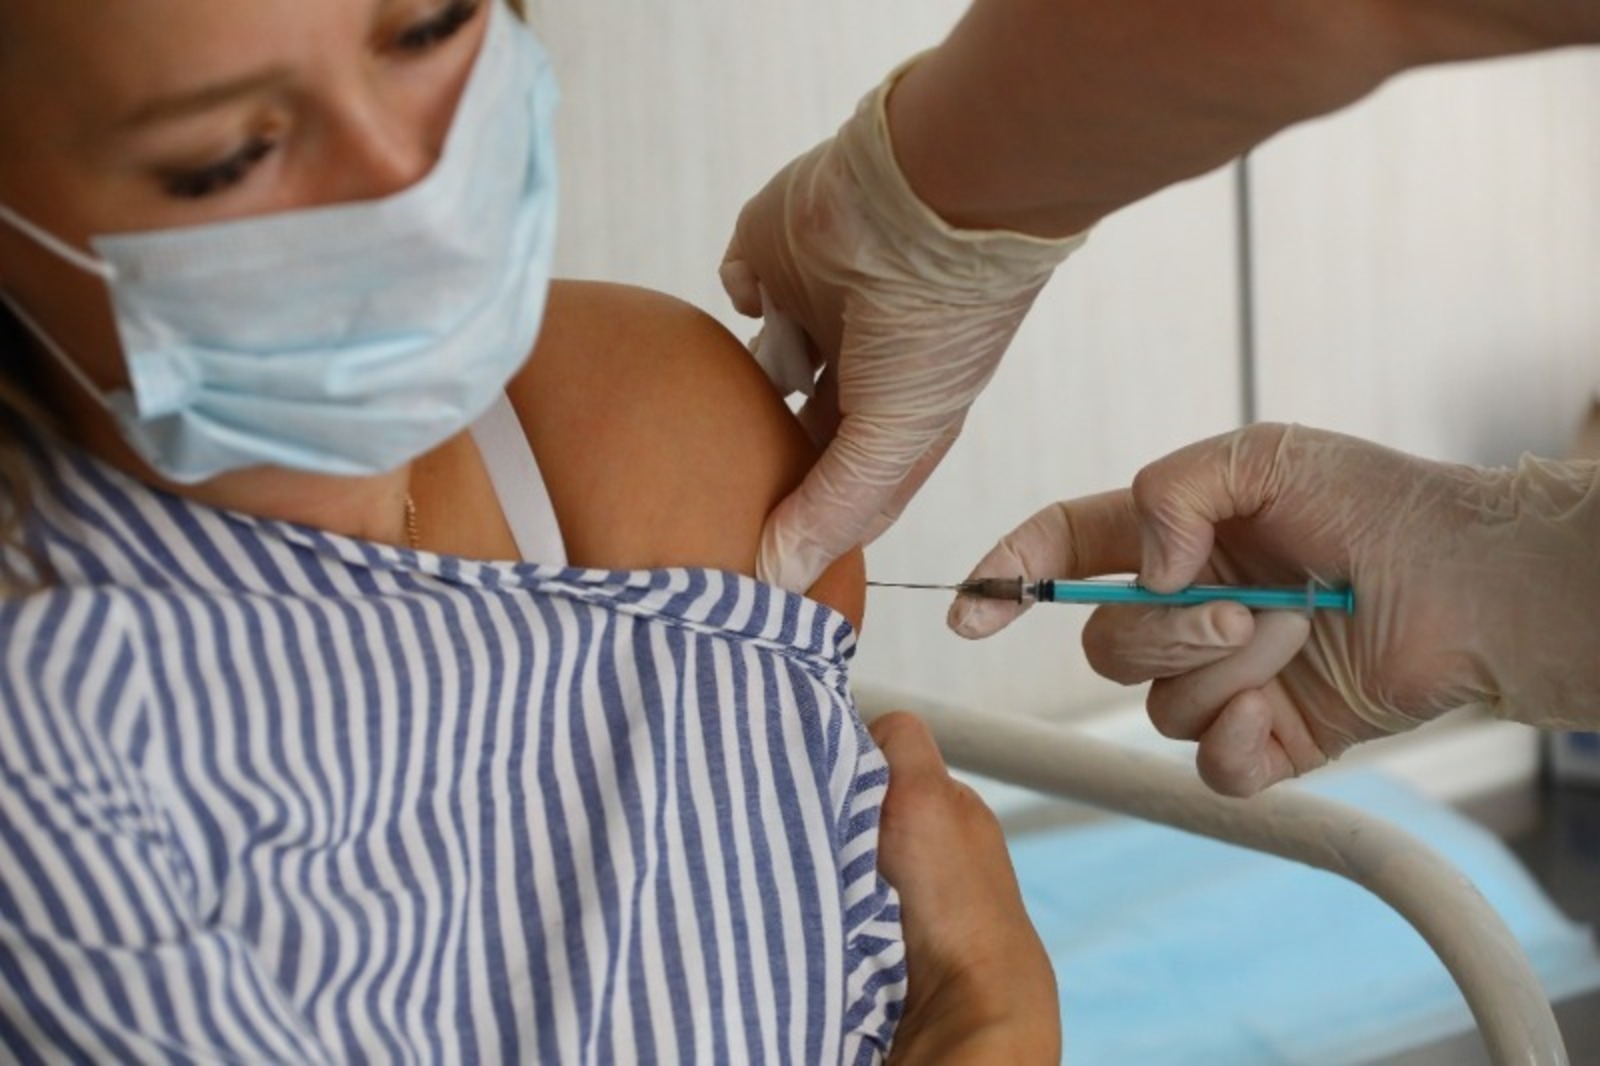 Обязательная вакцинация в Башкирии законна и однажды станет рутинной, говорят эксперты